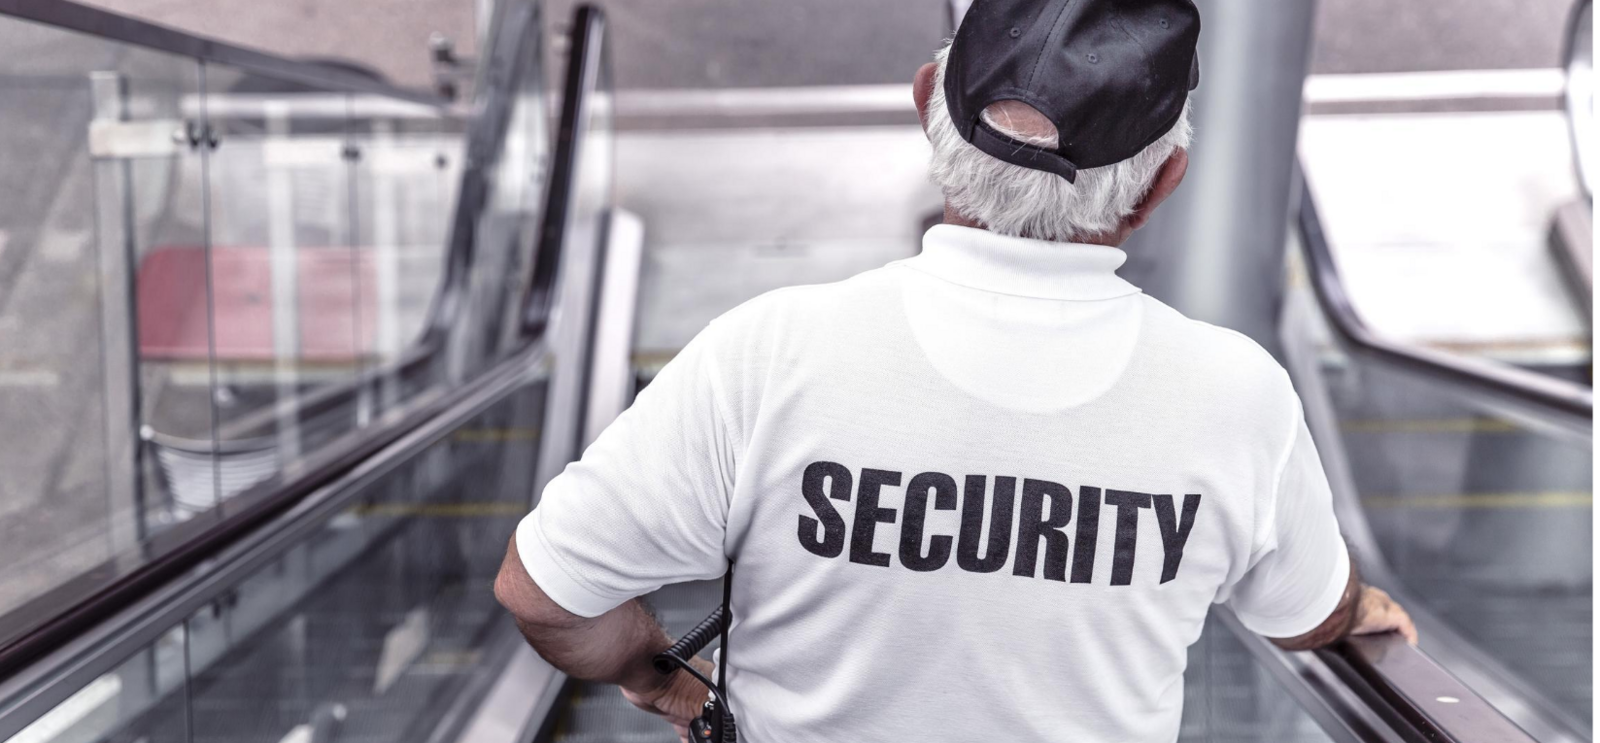 Vigilante de Seguridad, uno de los perfiles laborales más demandados en este verano.